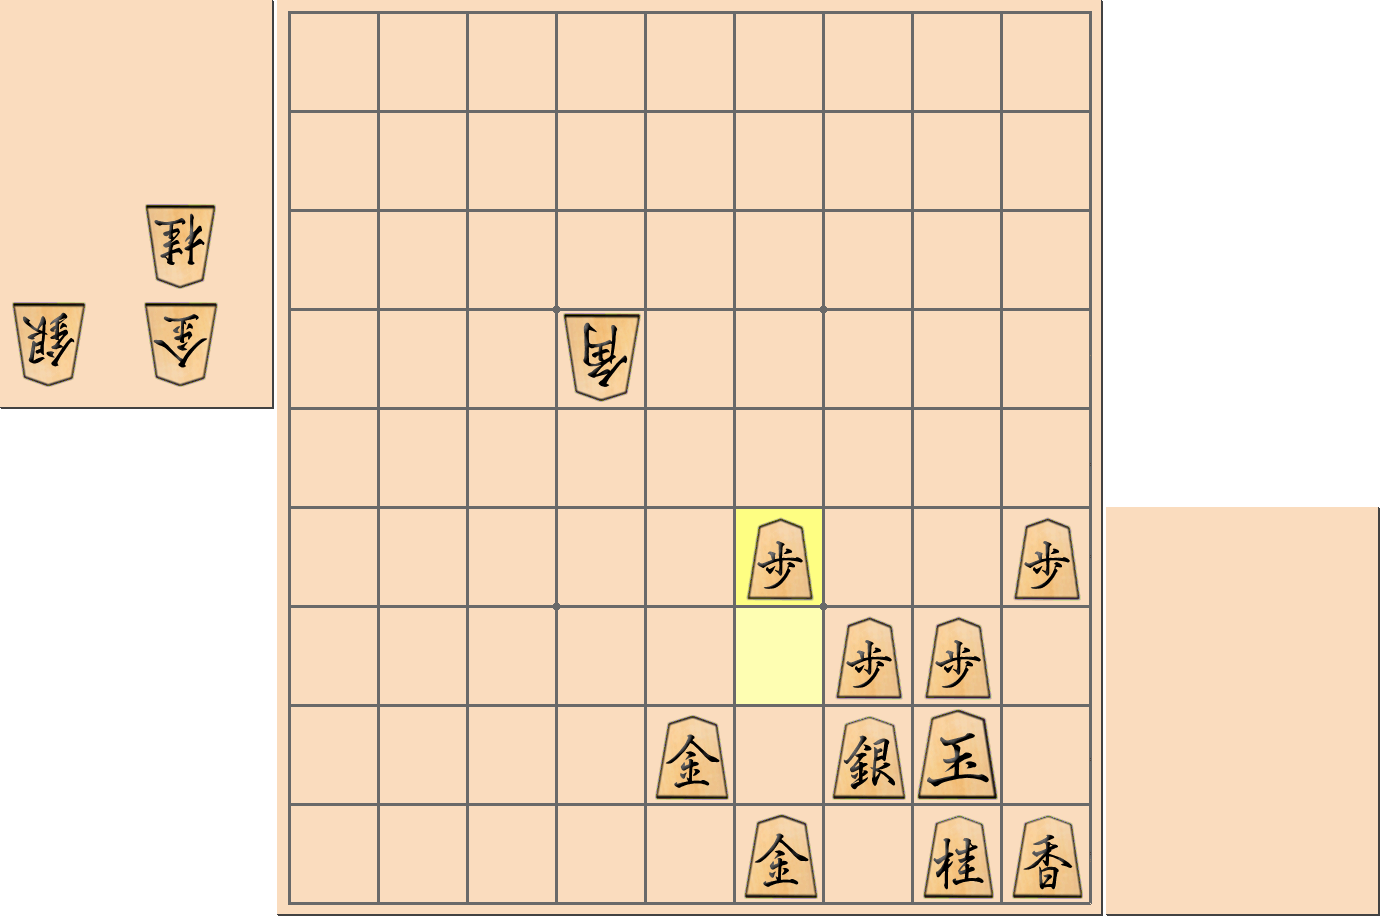 【将棋格言】「大駒は近づけて受けよ」となる部分図とされた手を指した局面2